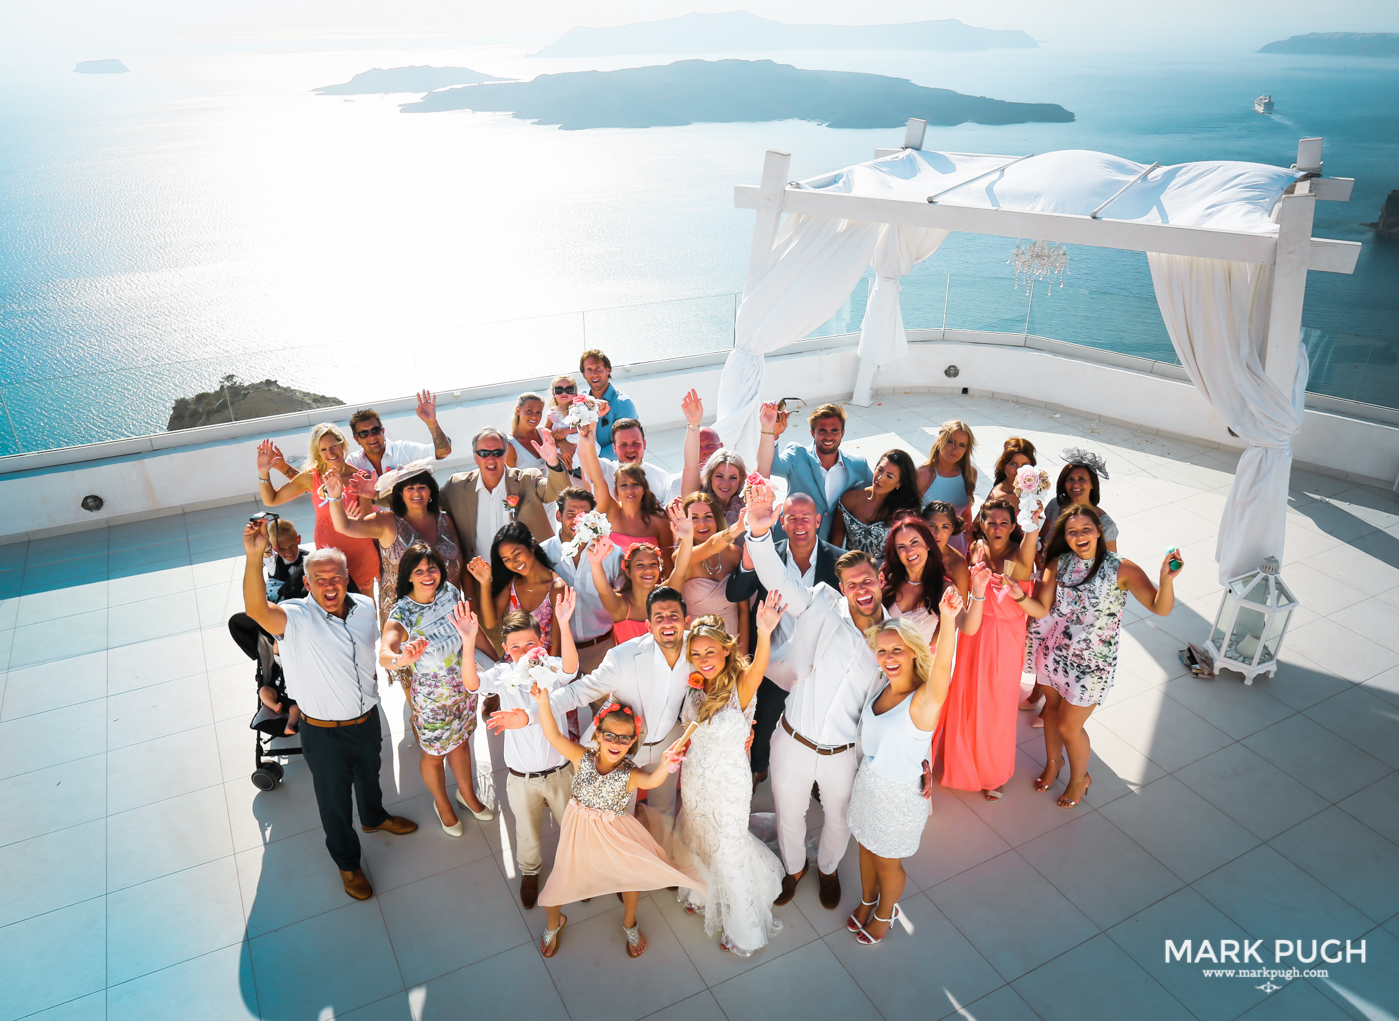 058 - Kerry and Lee - Destination Wedding in Santorini by www.markpugh.com -0735.JPG